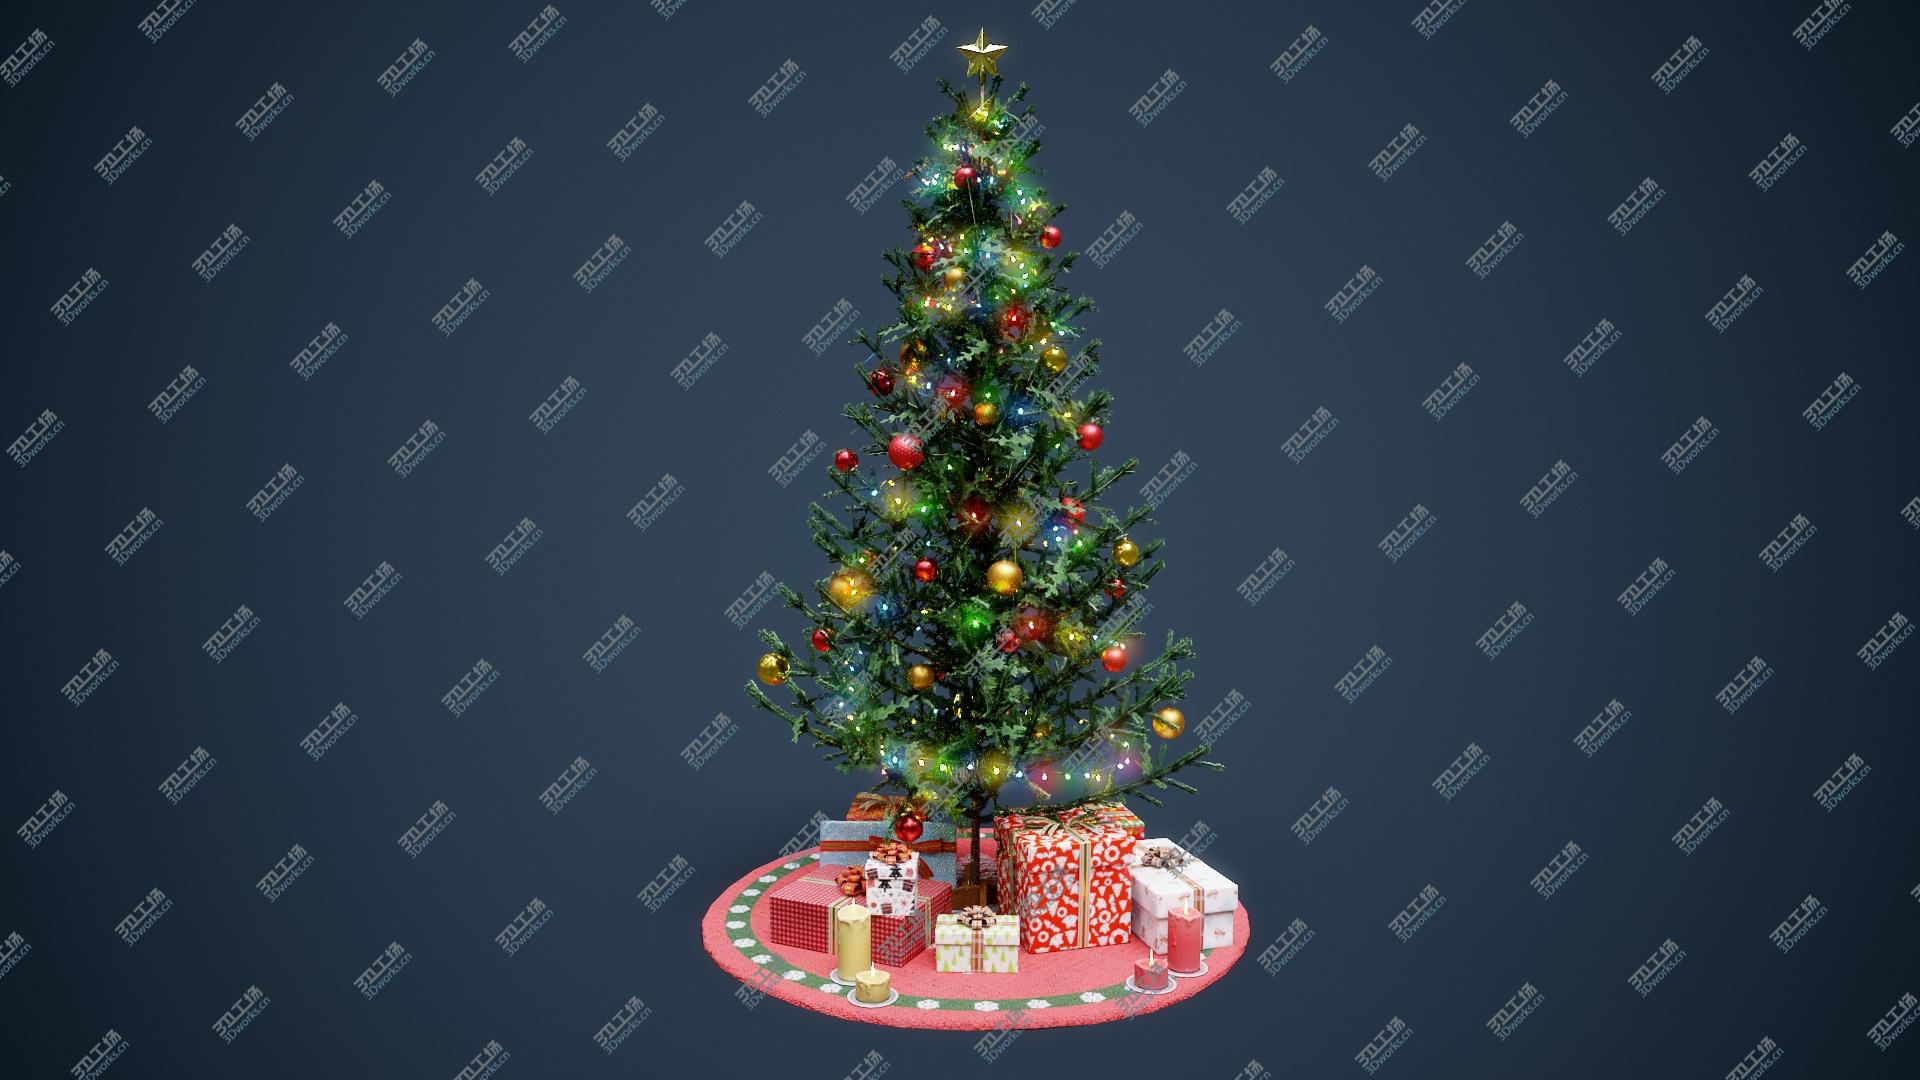 images/goods_img/2021040161/Christmas Tree GameReady LODs model/5.jpg